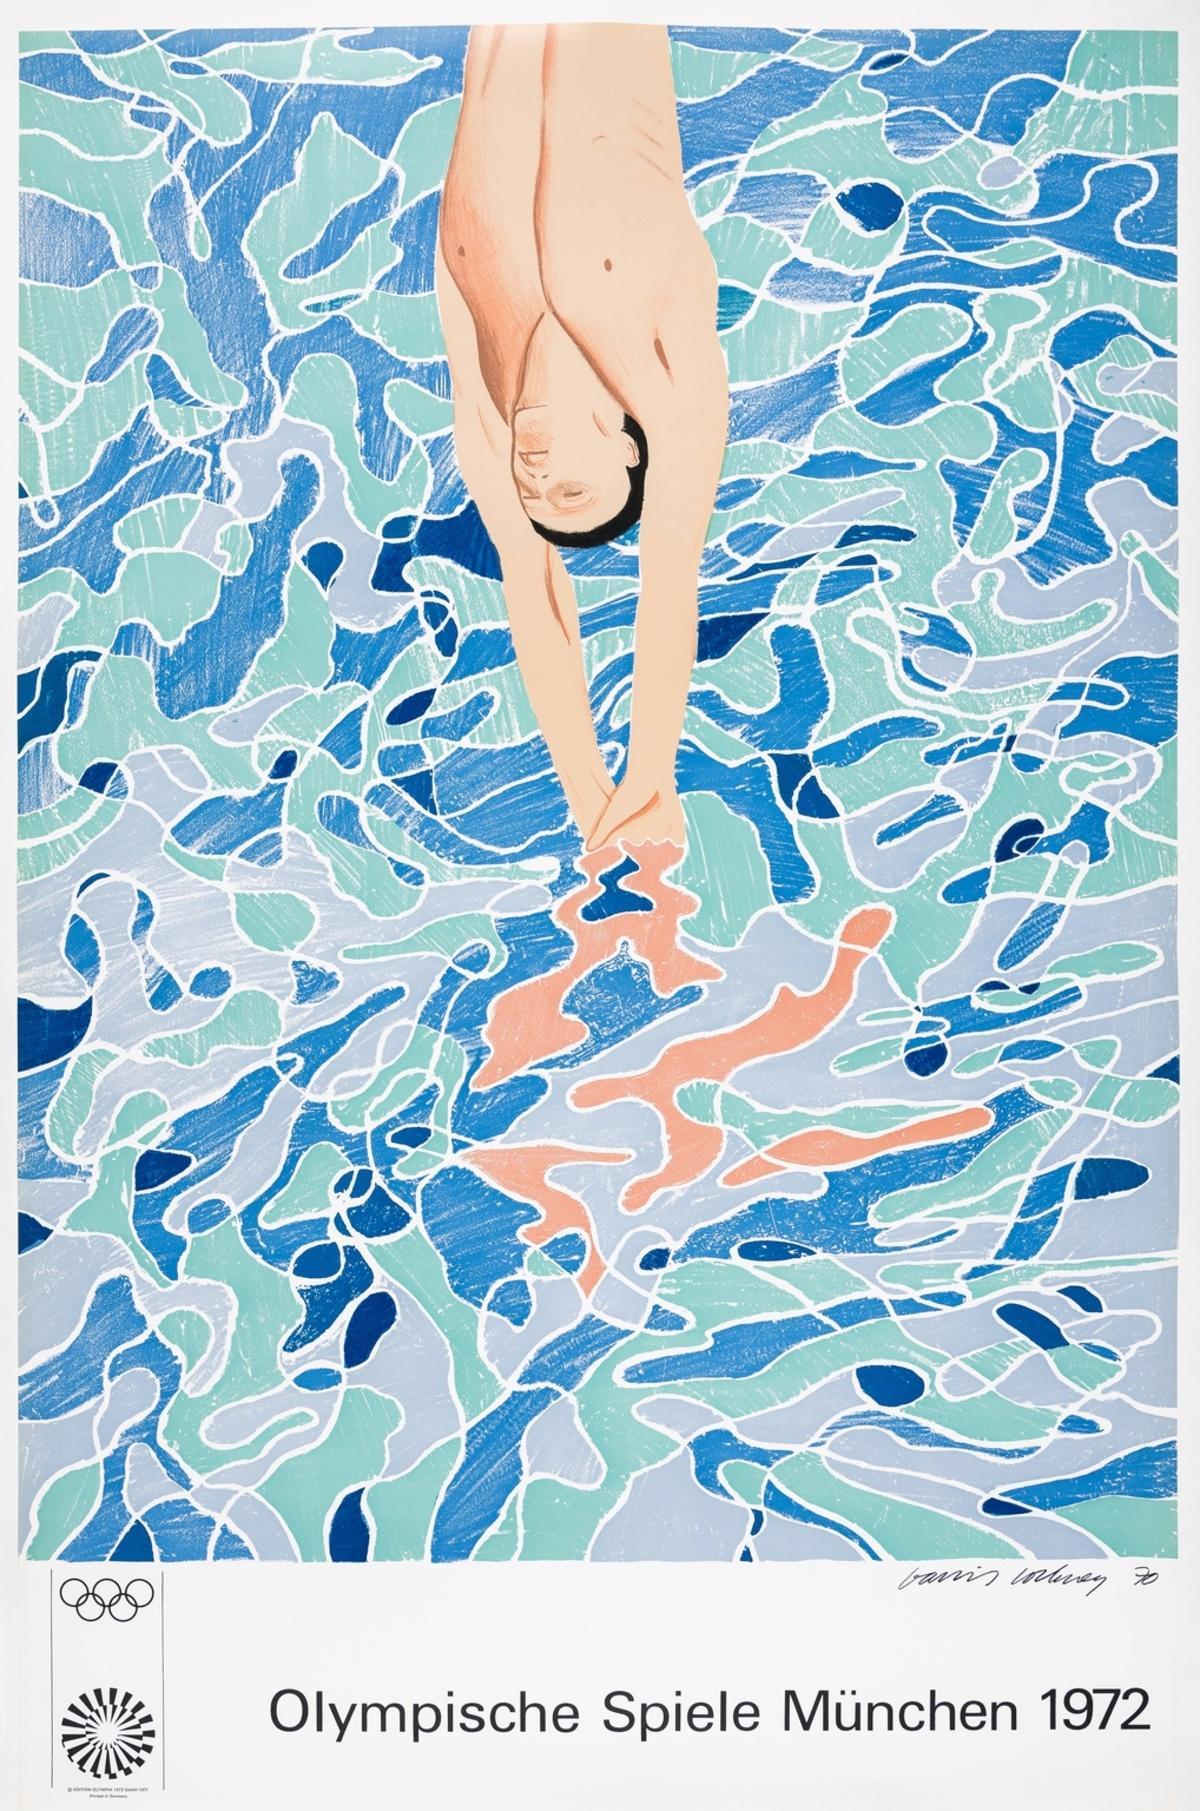 David Hockney (né en 1937)
Poste pour Olympische Spiele München, 1972 (Baggott 34)
Imprimé par Matthieu, Zurich, publié par Edition Olympia 1972 GmbH, Munich, sur papier vélin fin.
La feuille entière est imprimée sur les bords 
Feuille 101 x 64 cm